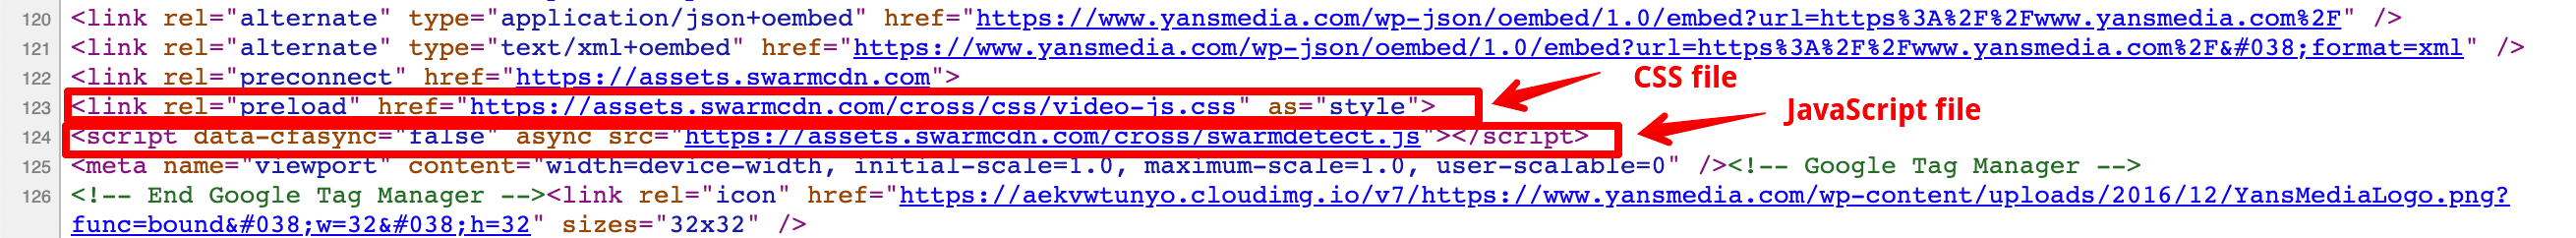 Archivos CSS y JS en la sección de encabezado